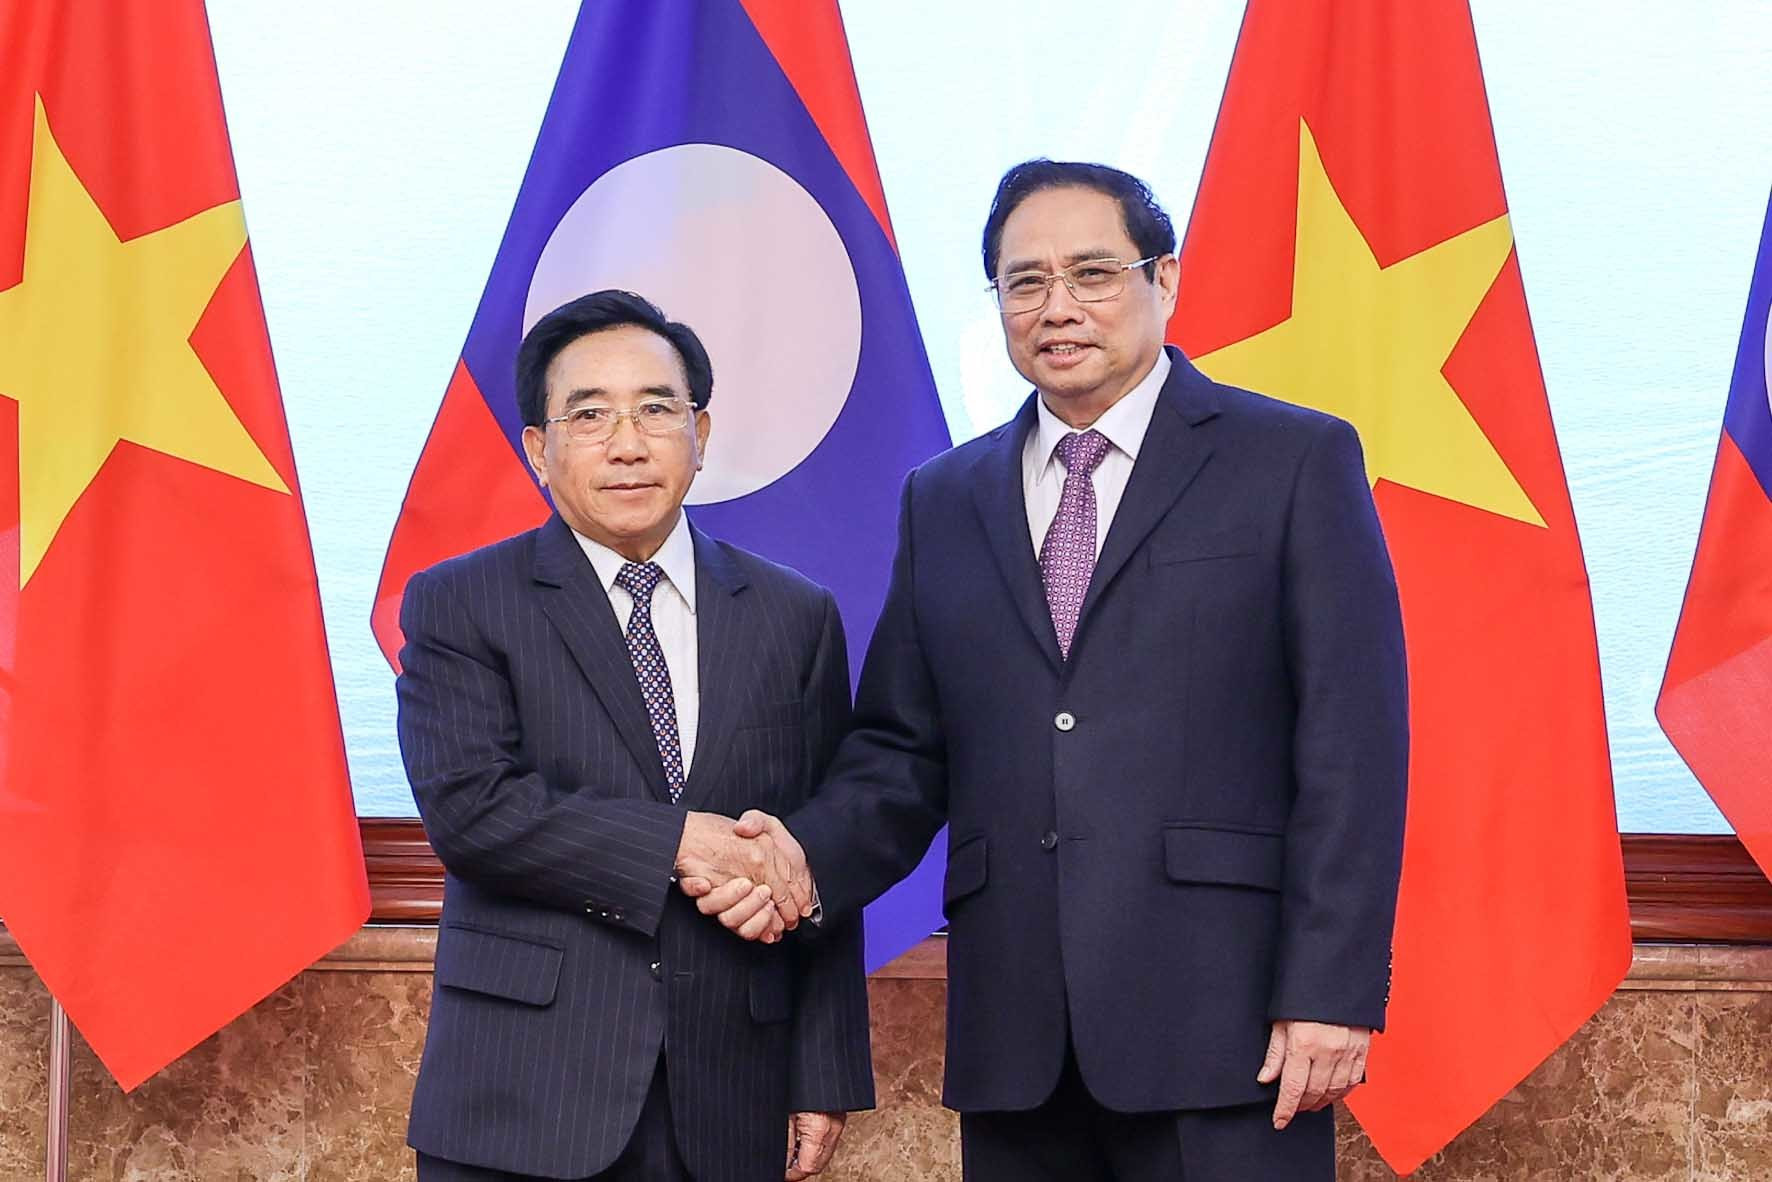 Đưa quan hệ chính trị, ngoại giao Việt Nam-Lào đi vào chiều sâu